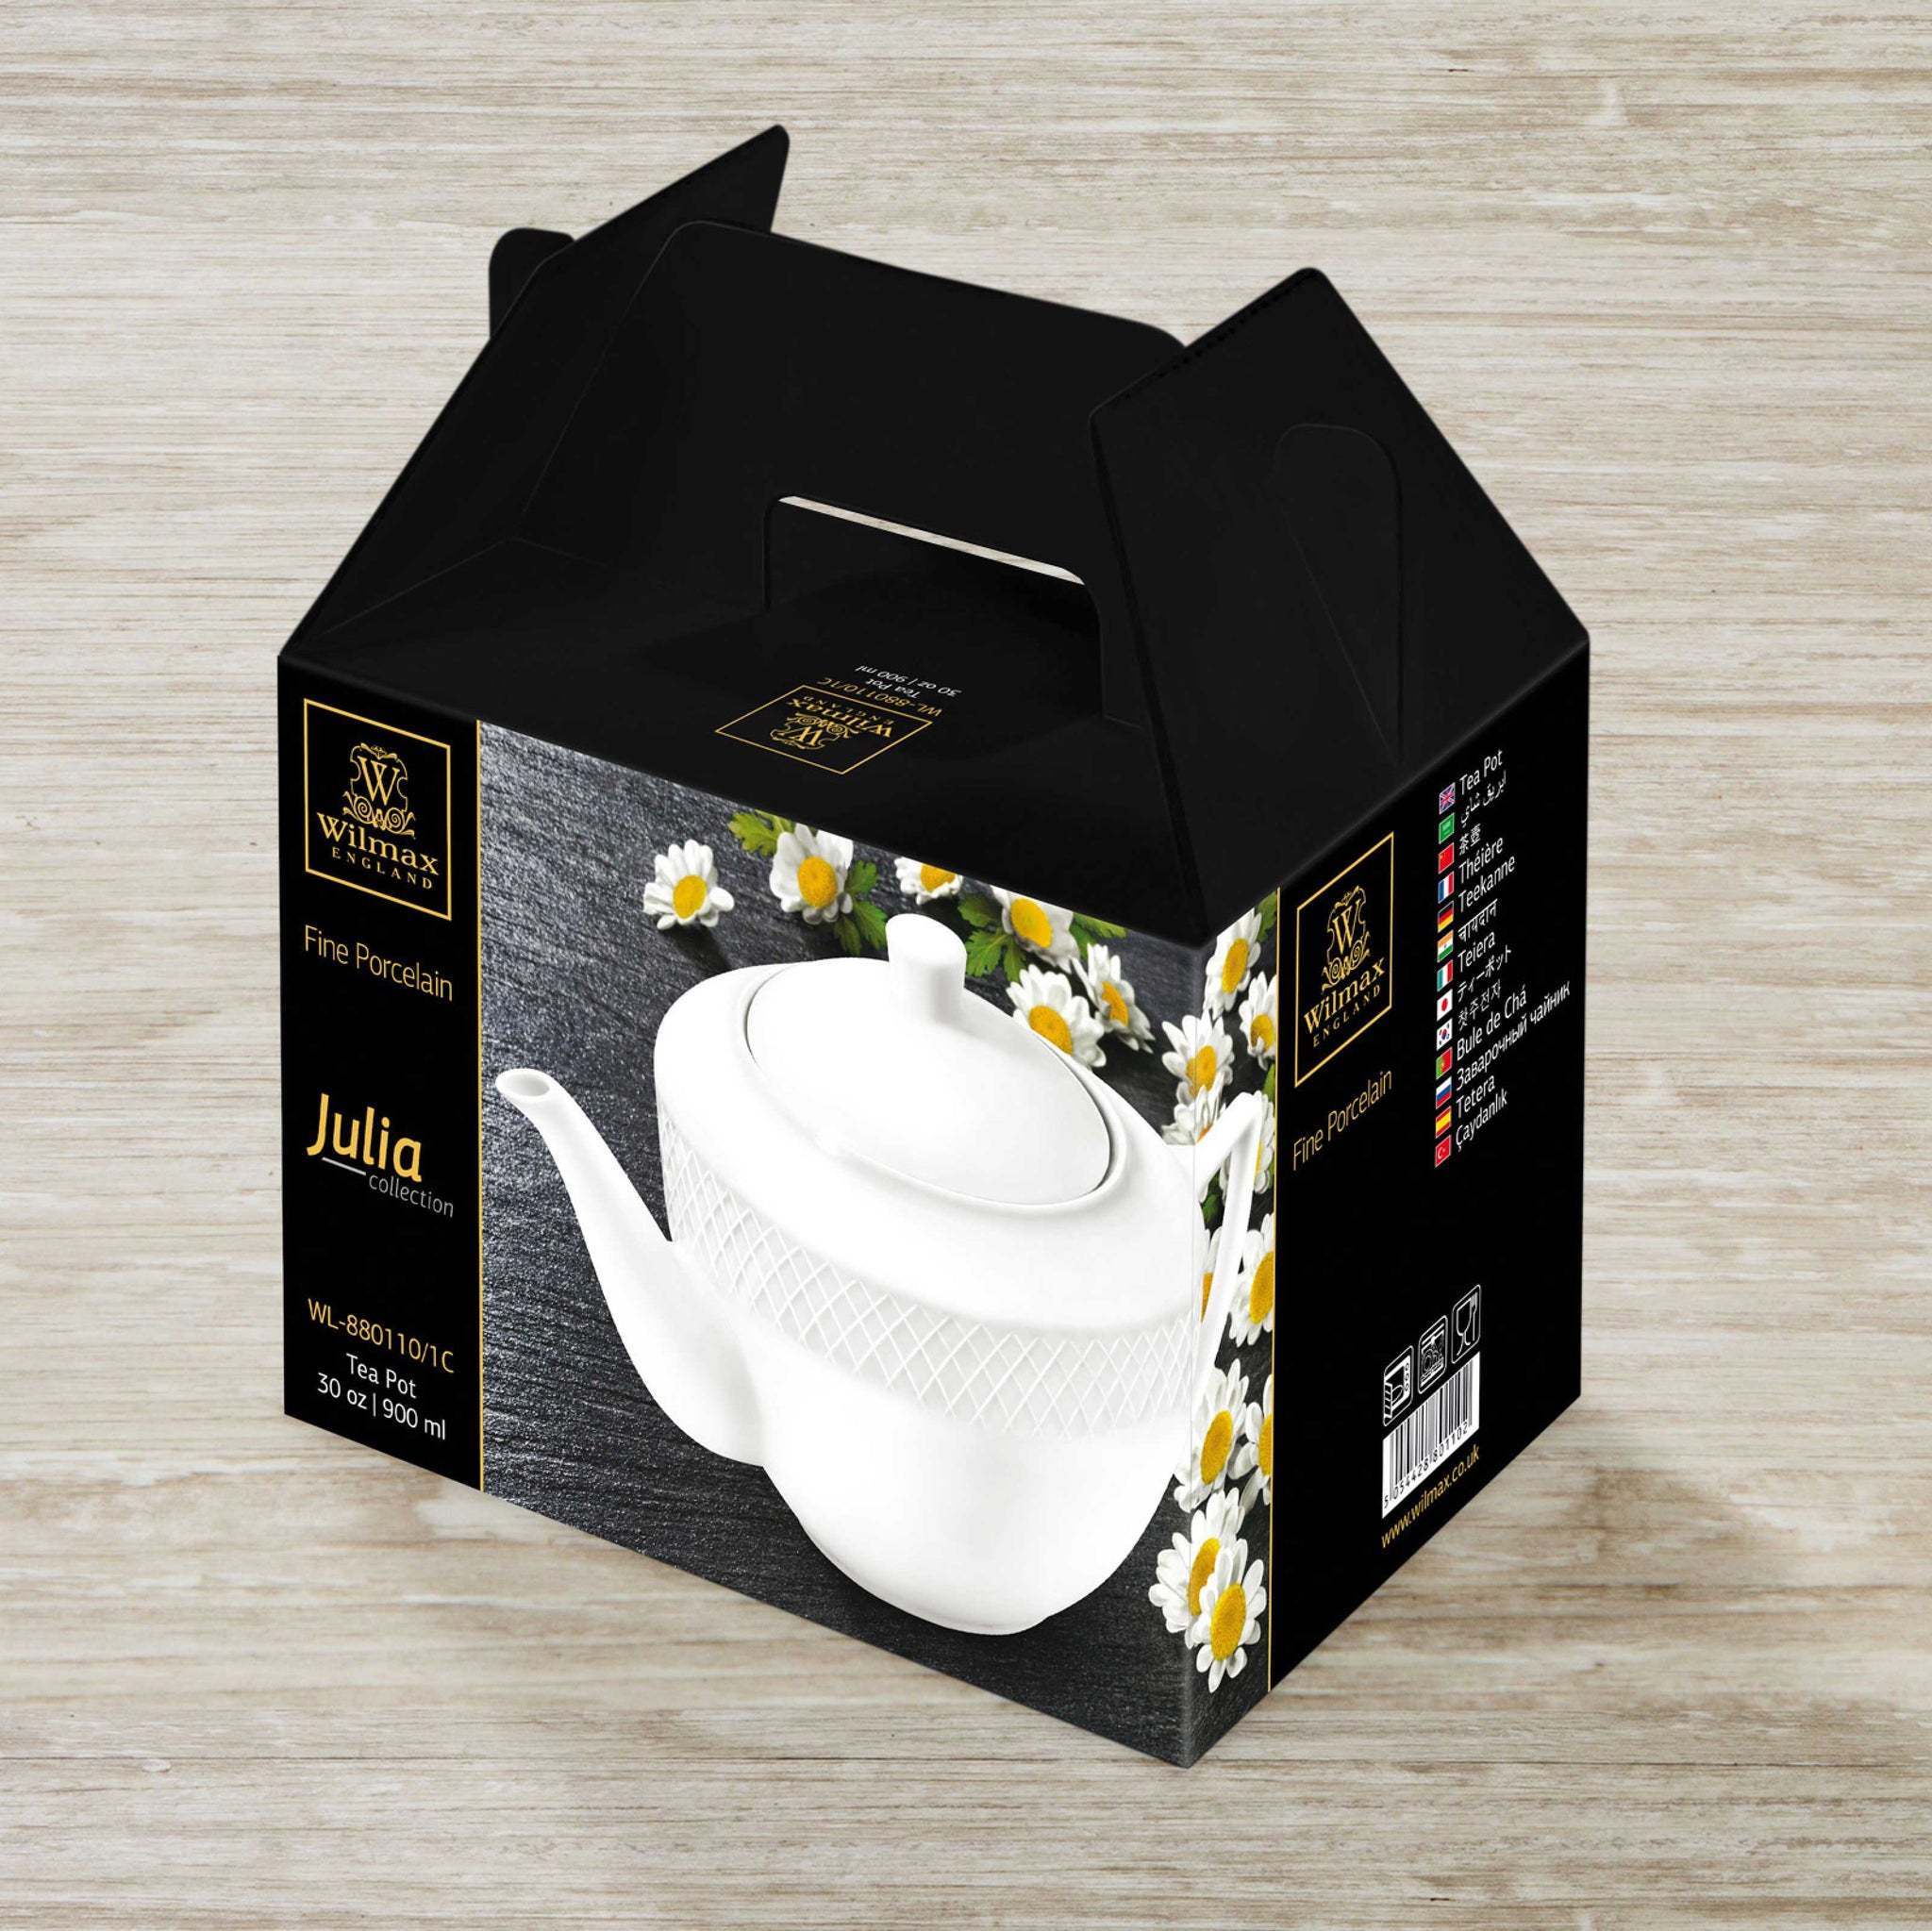 White Tea Pot 17 Oz  500 Ml In Colour Box by Wilmax Porcelain